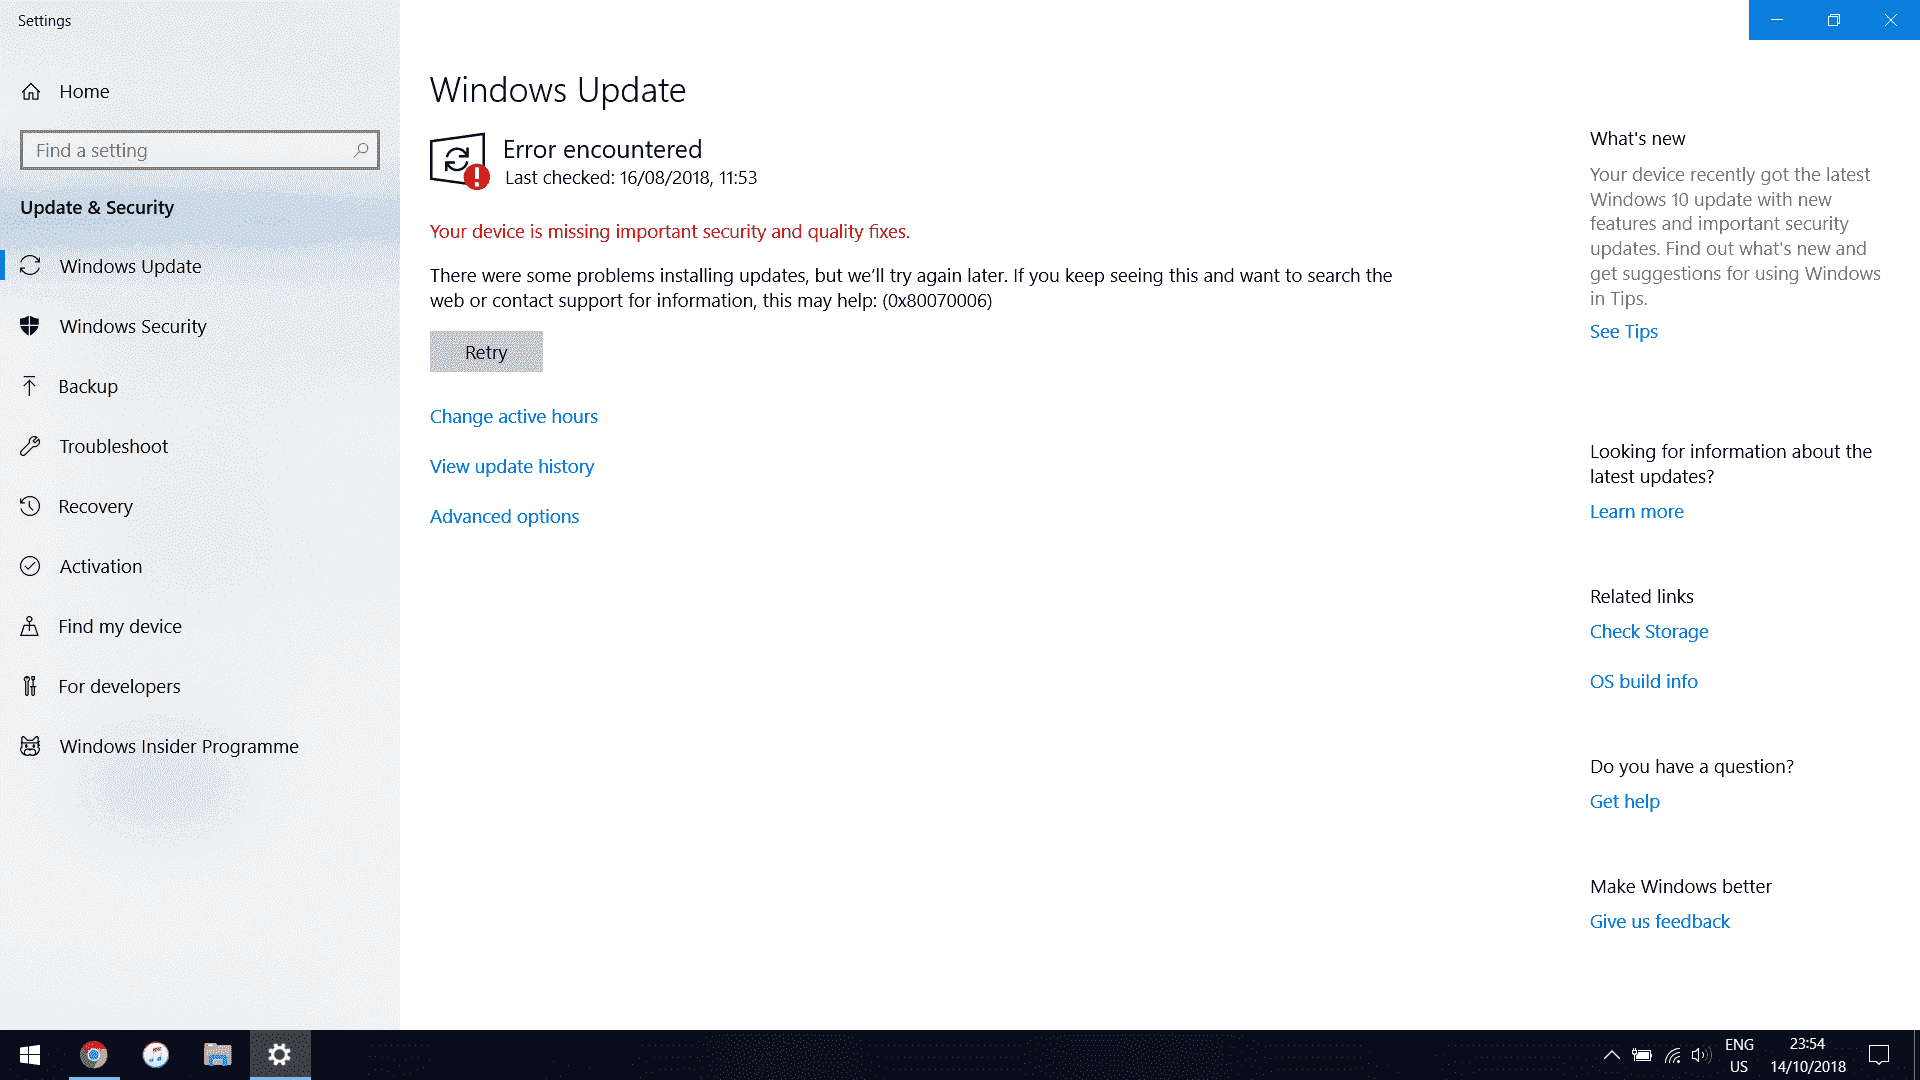 Windows Update/Defender Errors ...? HELP 10dfc637-26e9-4f2d-8843-3f175b069e51?upload=true.png